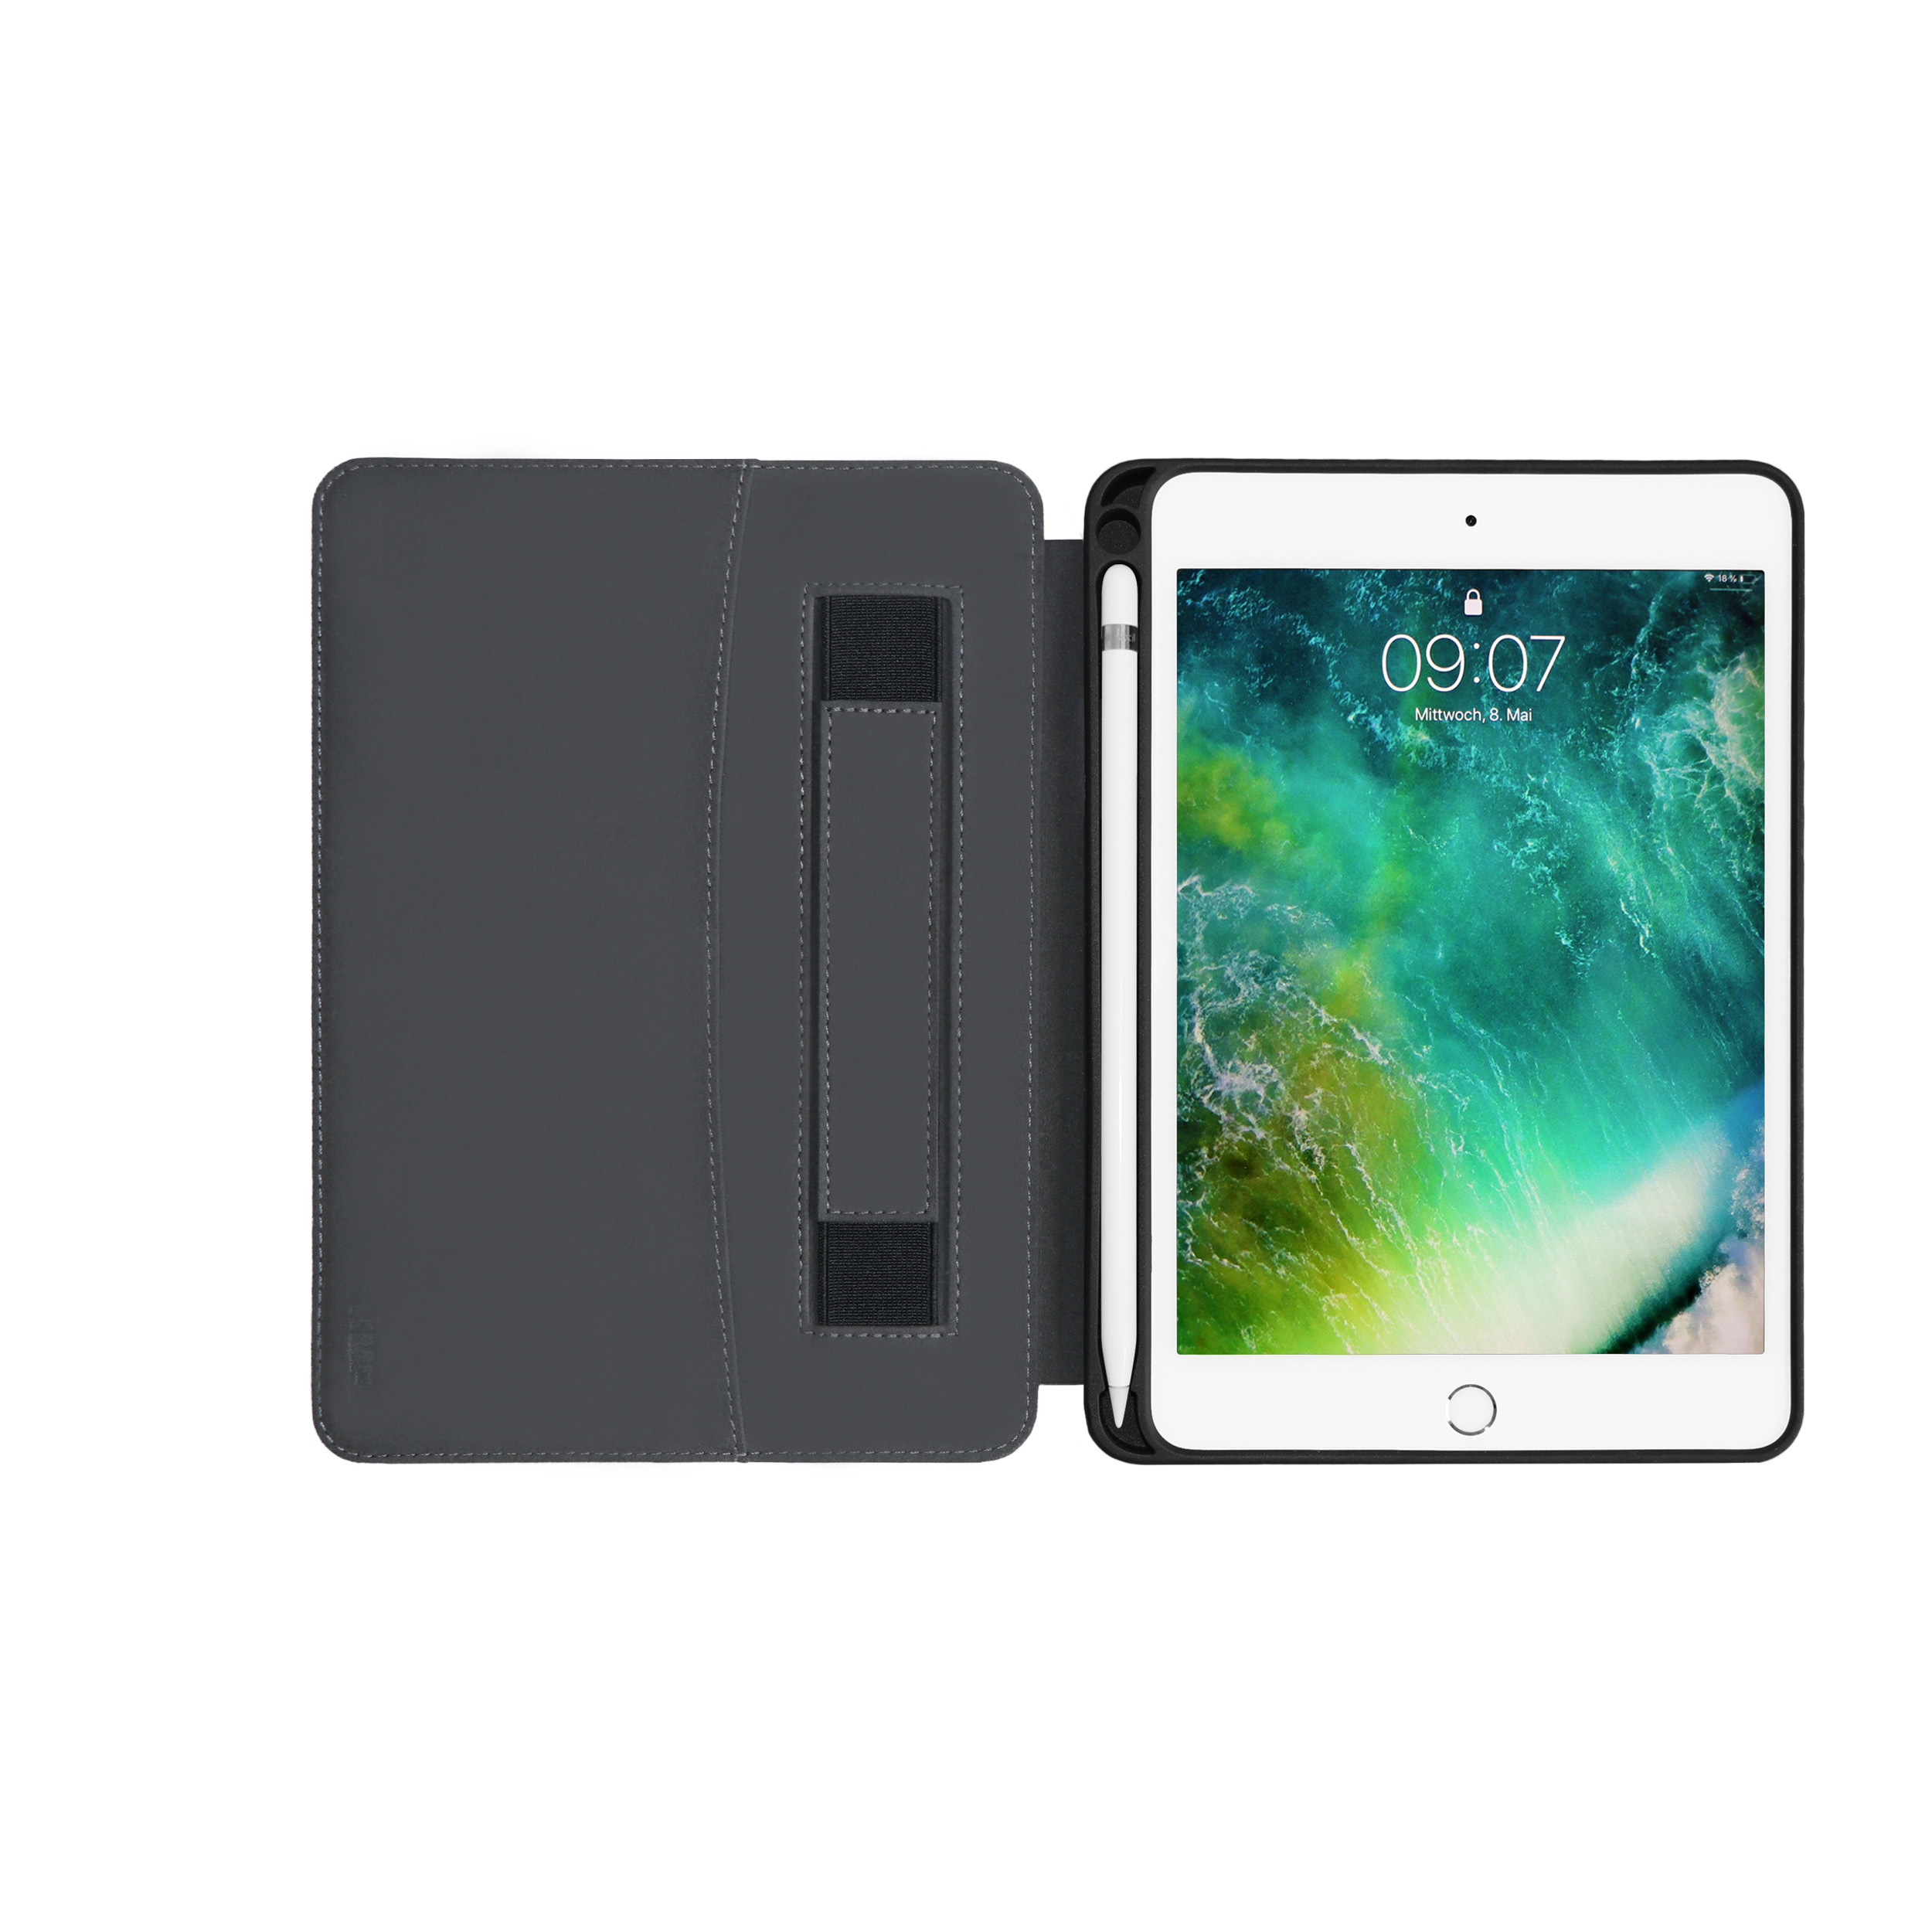 KMP Leder Mikrofaser, Apple - PU, Cover Mini Faux blue Full Blue 5 case PC, Protective Leder iPad Bookcase für für